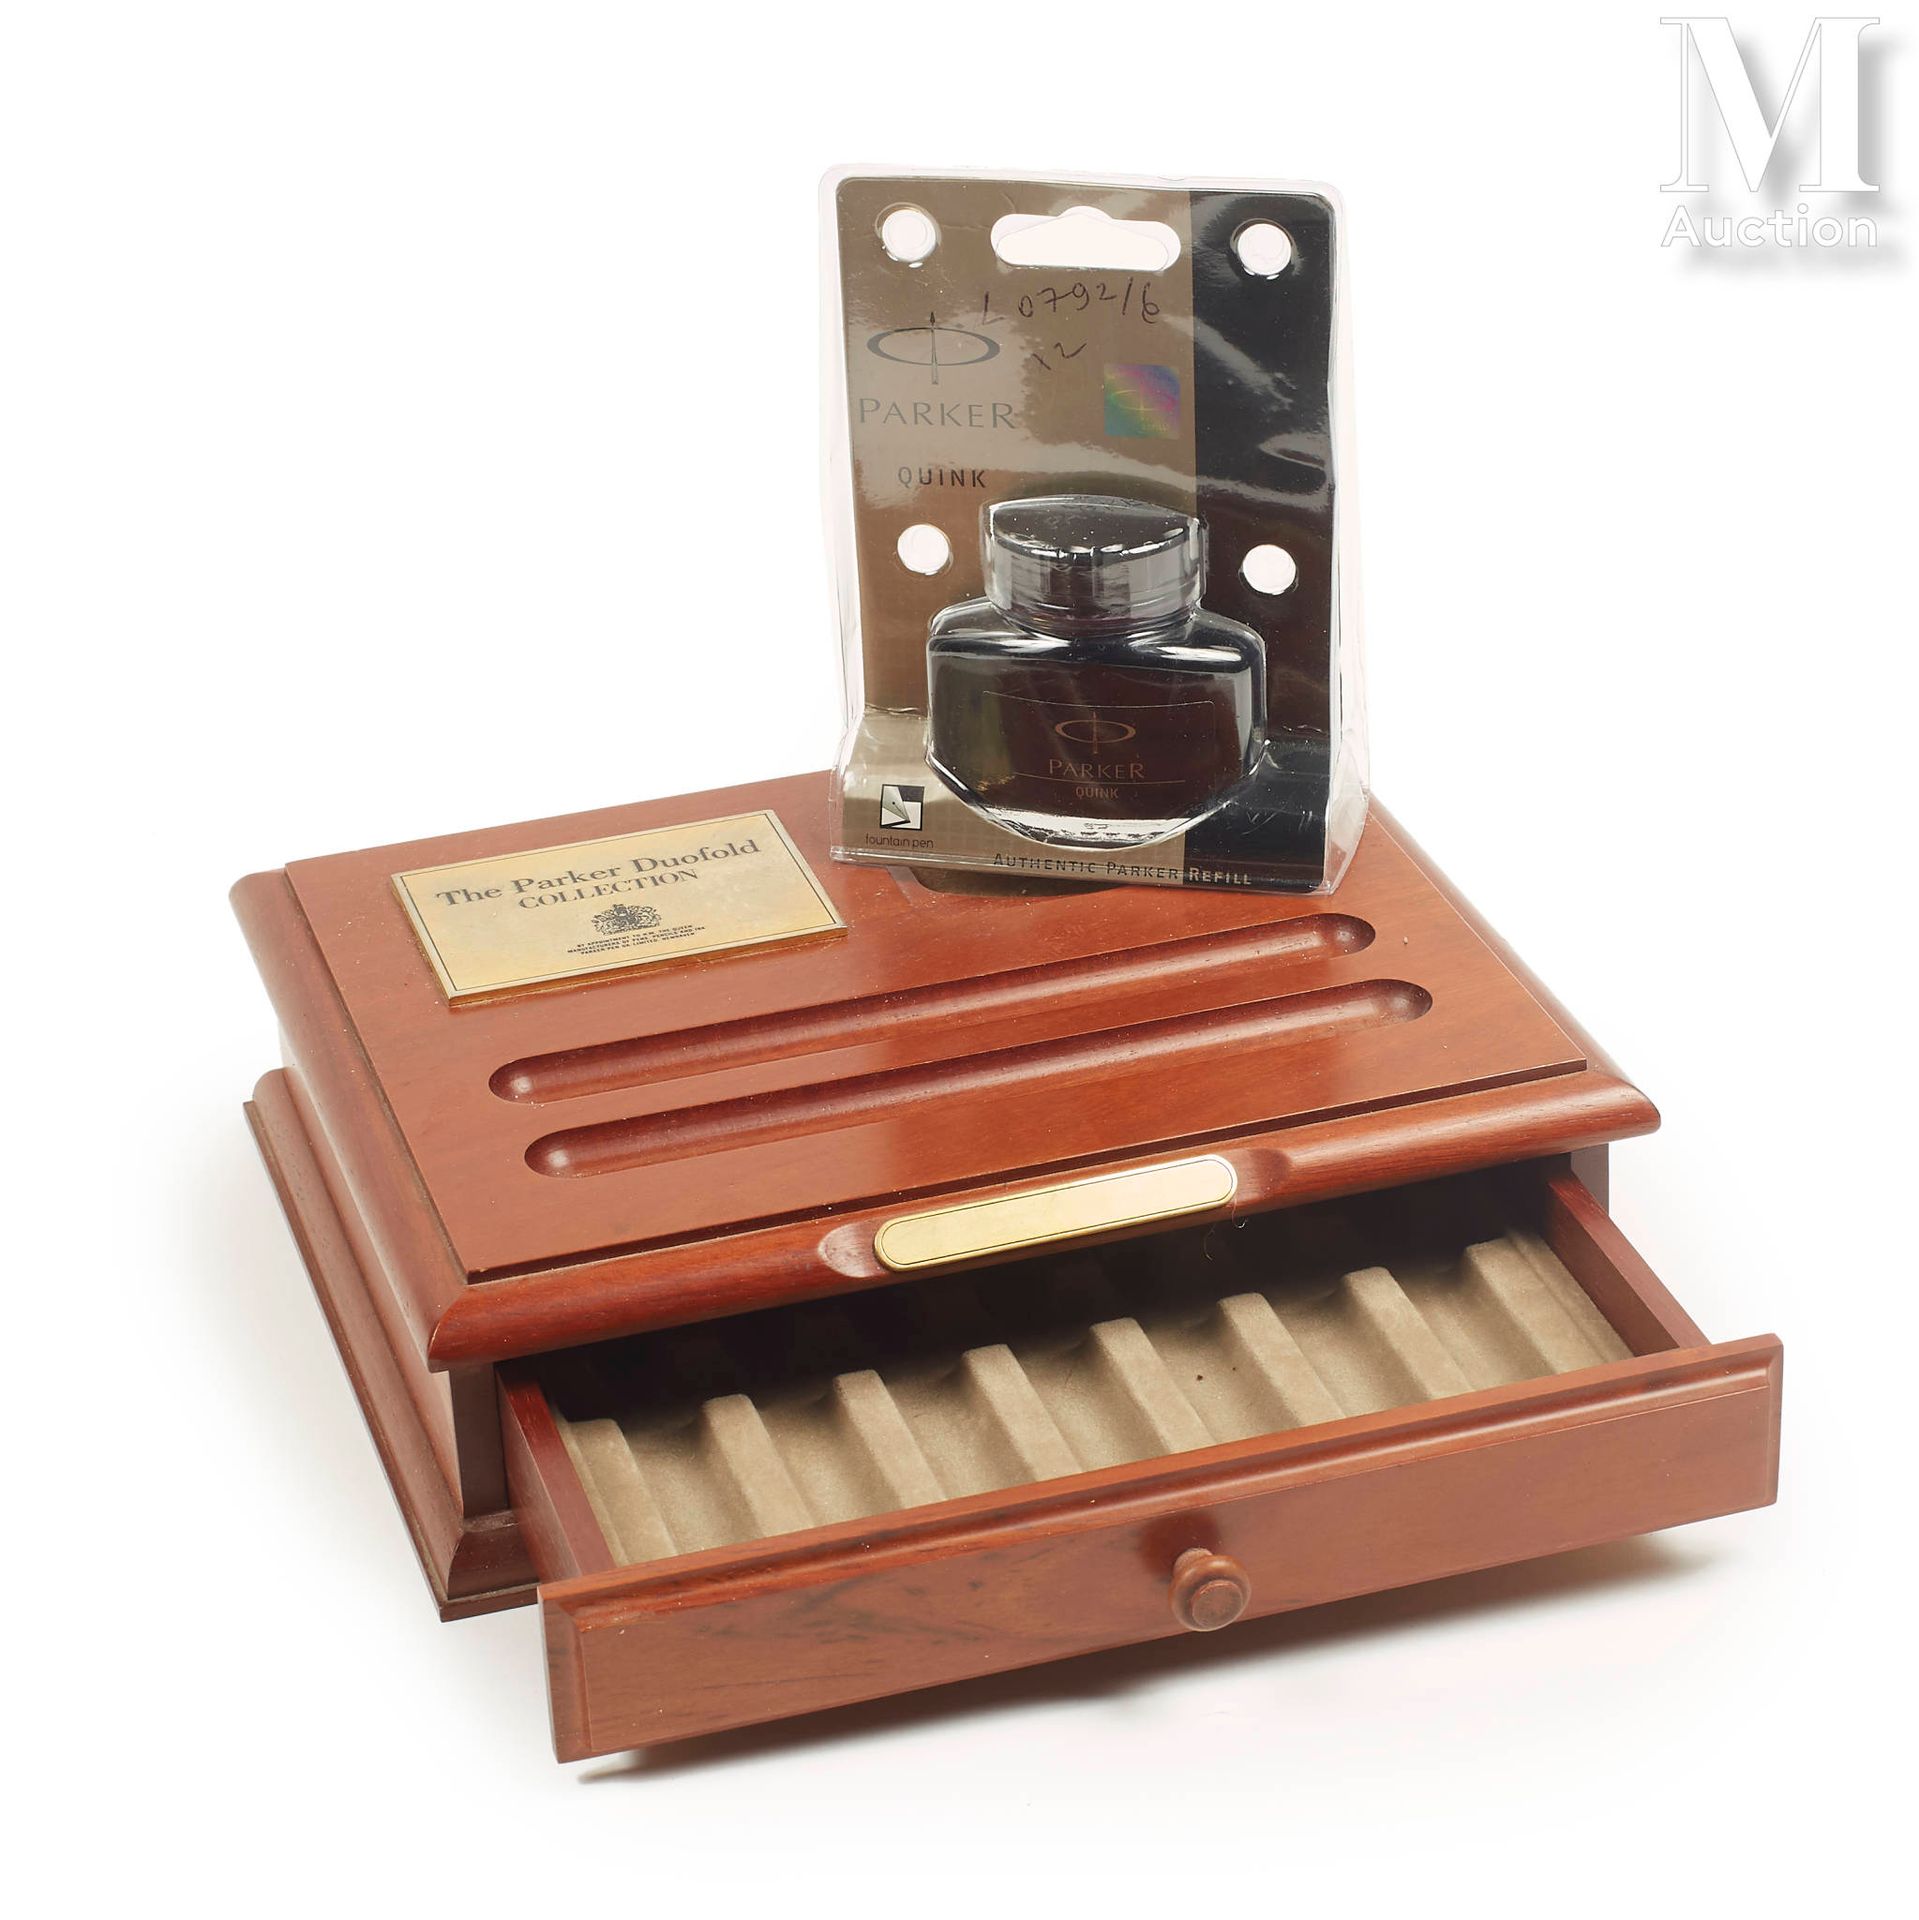 PARKER Caja de madera con un cajón para 7 plumas, con su frasco de tinta.